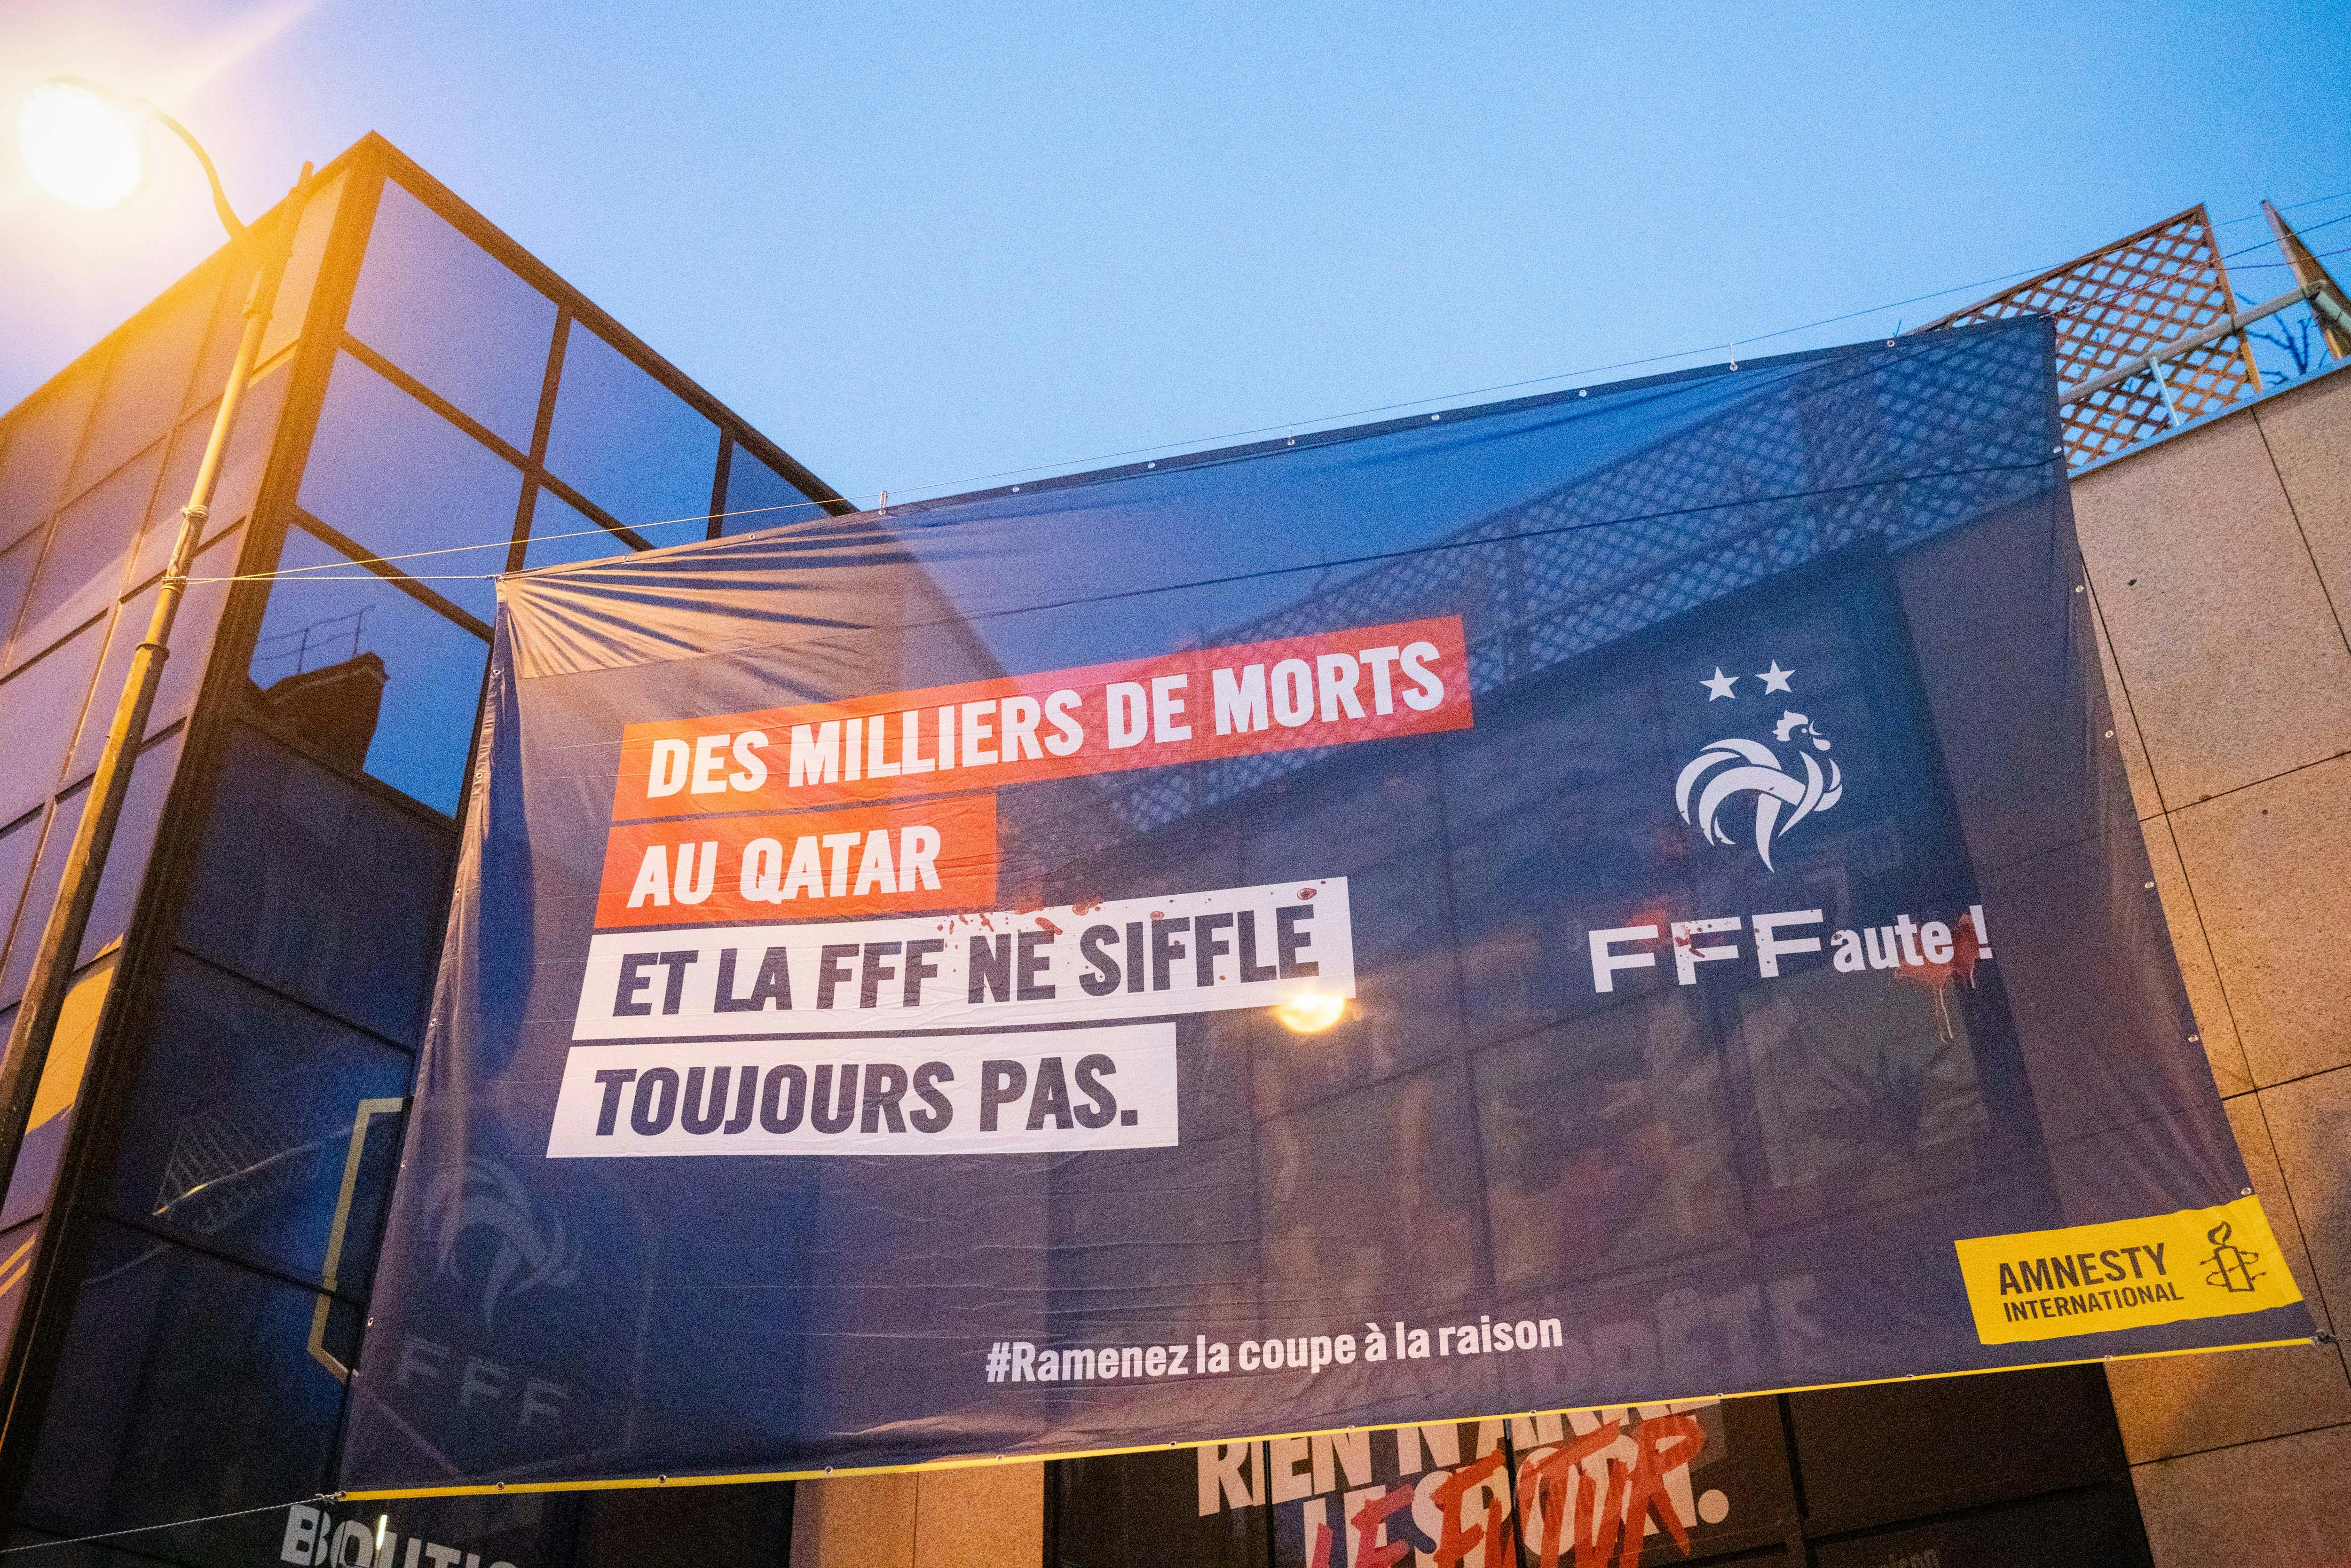 Photo prise le 15 décembre 2021, devant le siège de la Fédération Française de Football pour leur rappeler leurs responsabilités vis-à-vis des violations de droits humains des travailleurs migrants au Qatar, dans le cadre de la coupe du monde 2022. Crédit : Benjamin Girette